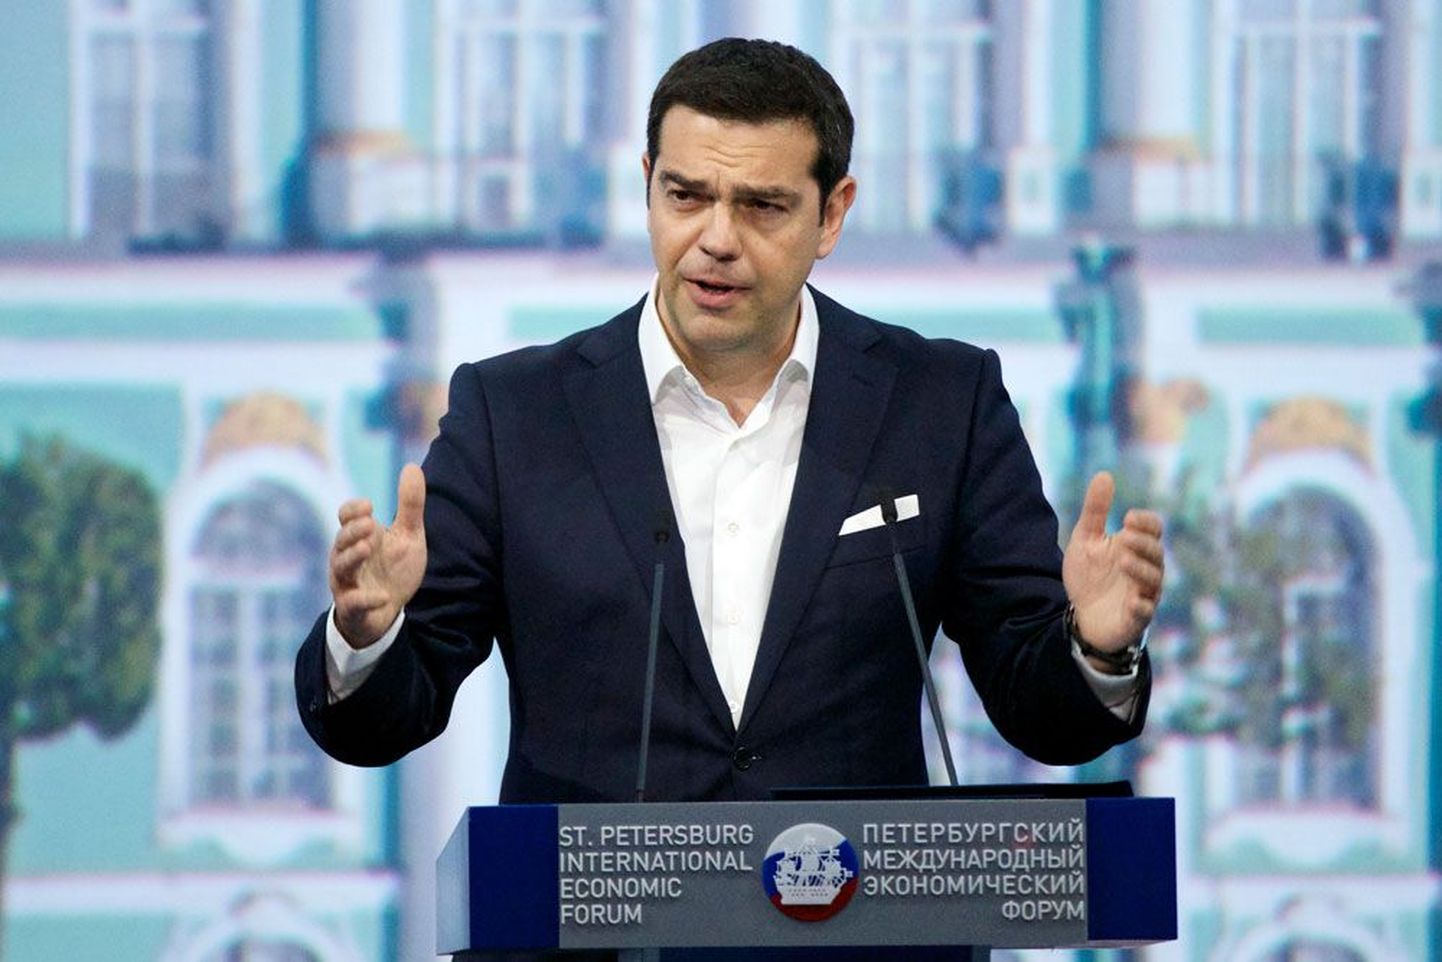 Последний шаг премьера Греции Алексиса Ципраса, направившего кредиторам письмо с заявлением о принятии их условий, можно назвать частичным отступлением, но еще не полной капитуляцией.